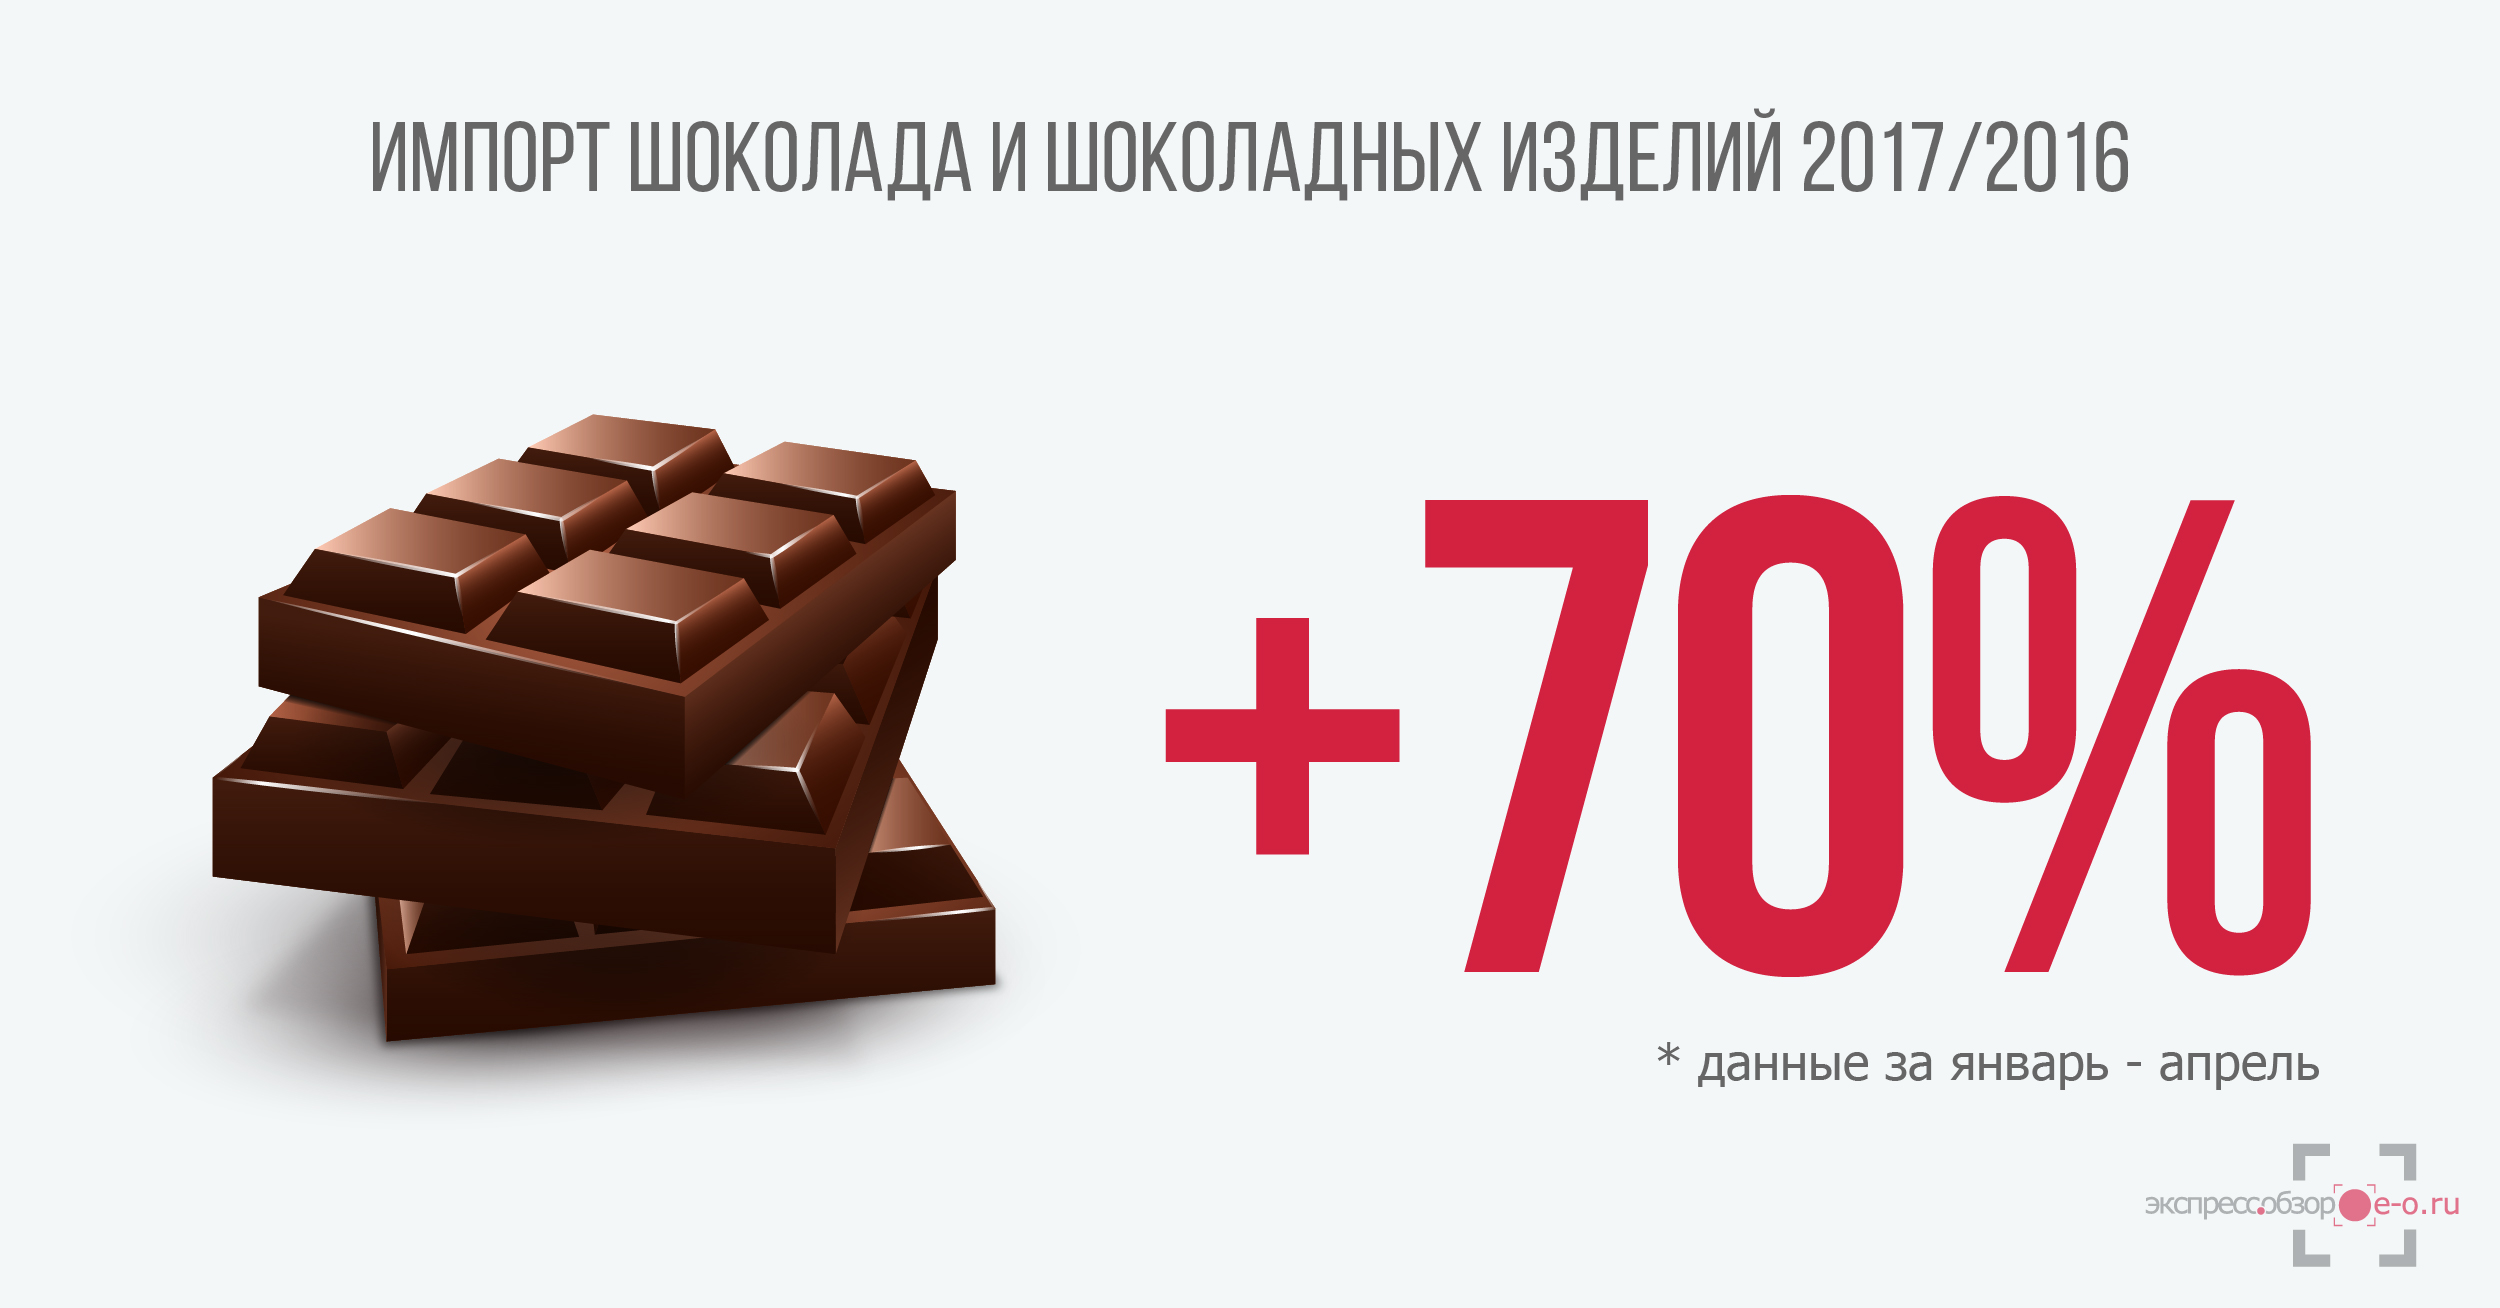 импорт шоколада в Россию 2017/2016